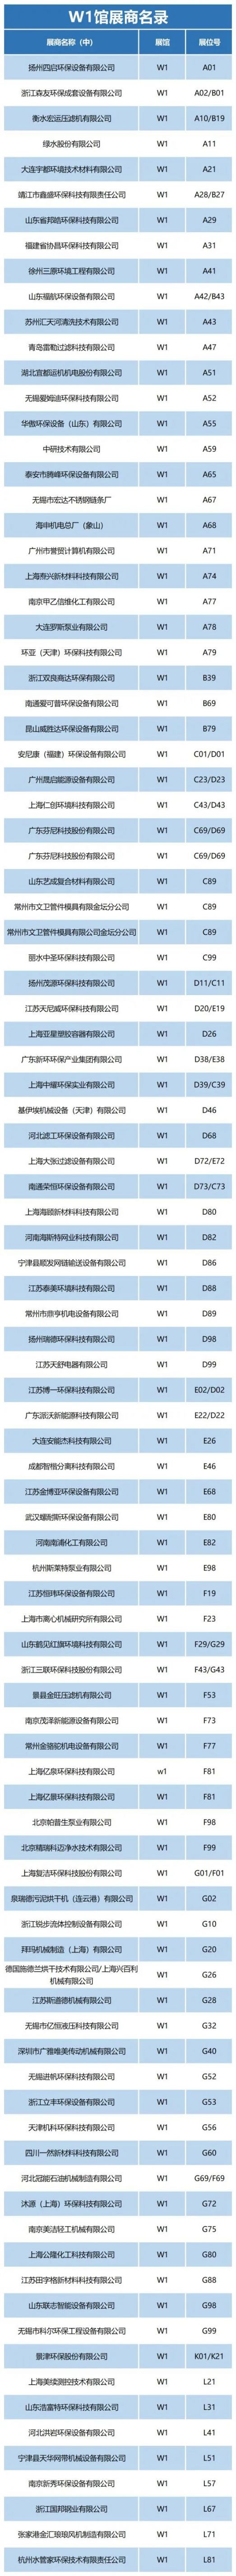 2020中国(上海)环博会展位图 展商名单